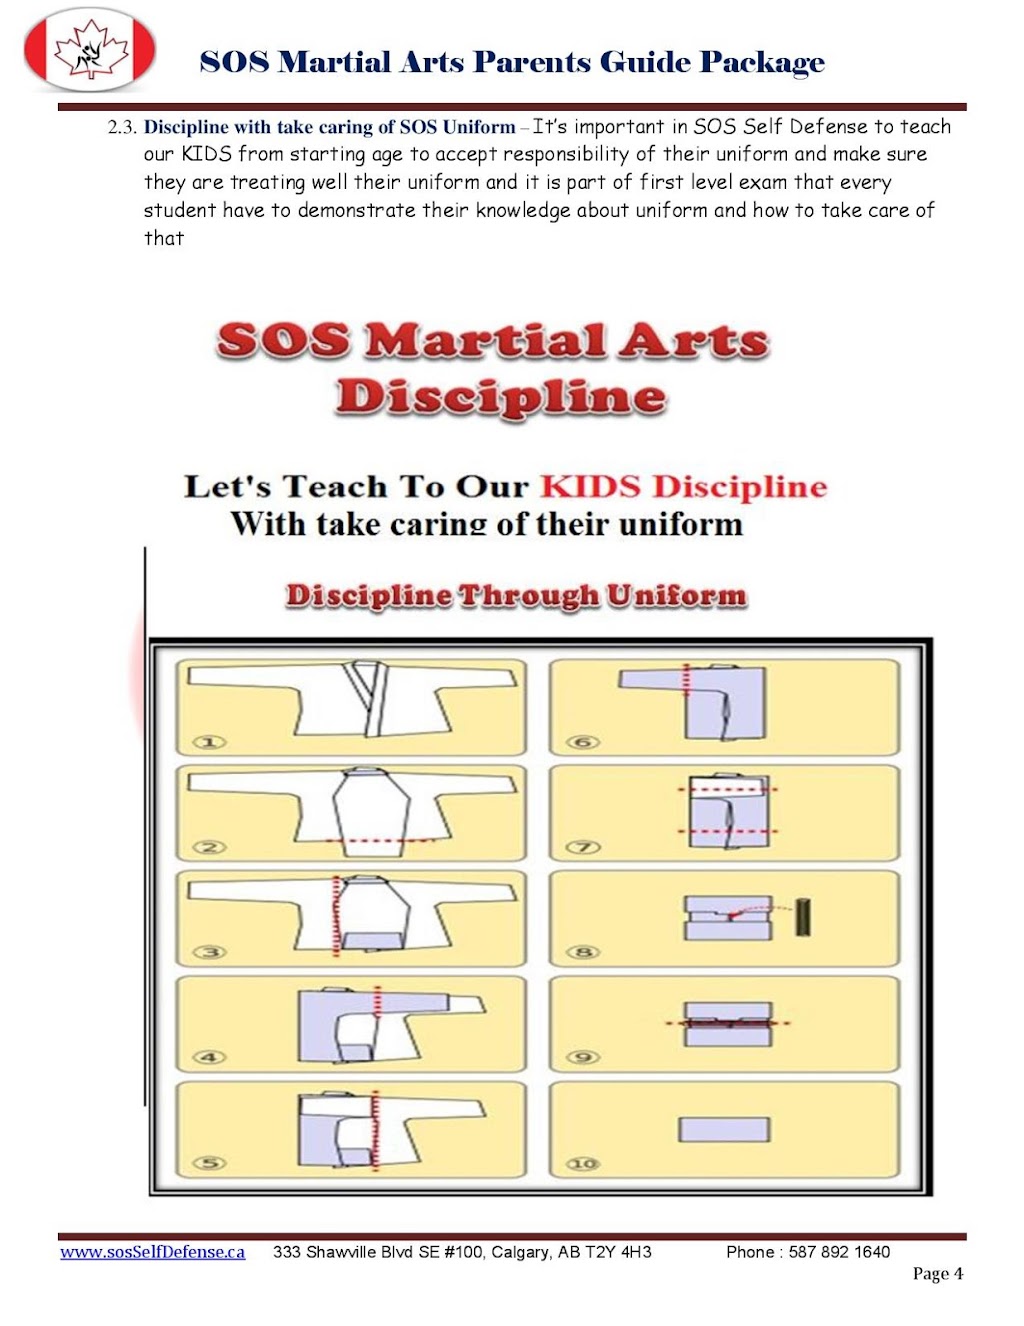 SOS Martial Arts Self Defense Academy | 333 Shawville Blvd SE #100, Calgary, AB T2Y 4H3, Canada | Phone: (587) 892-1640